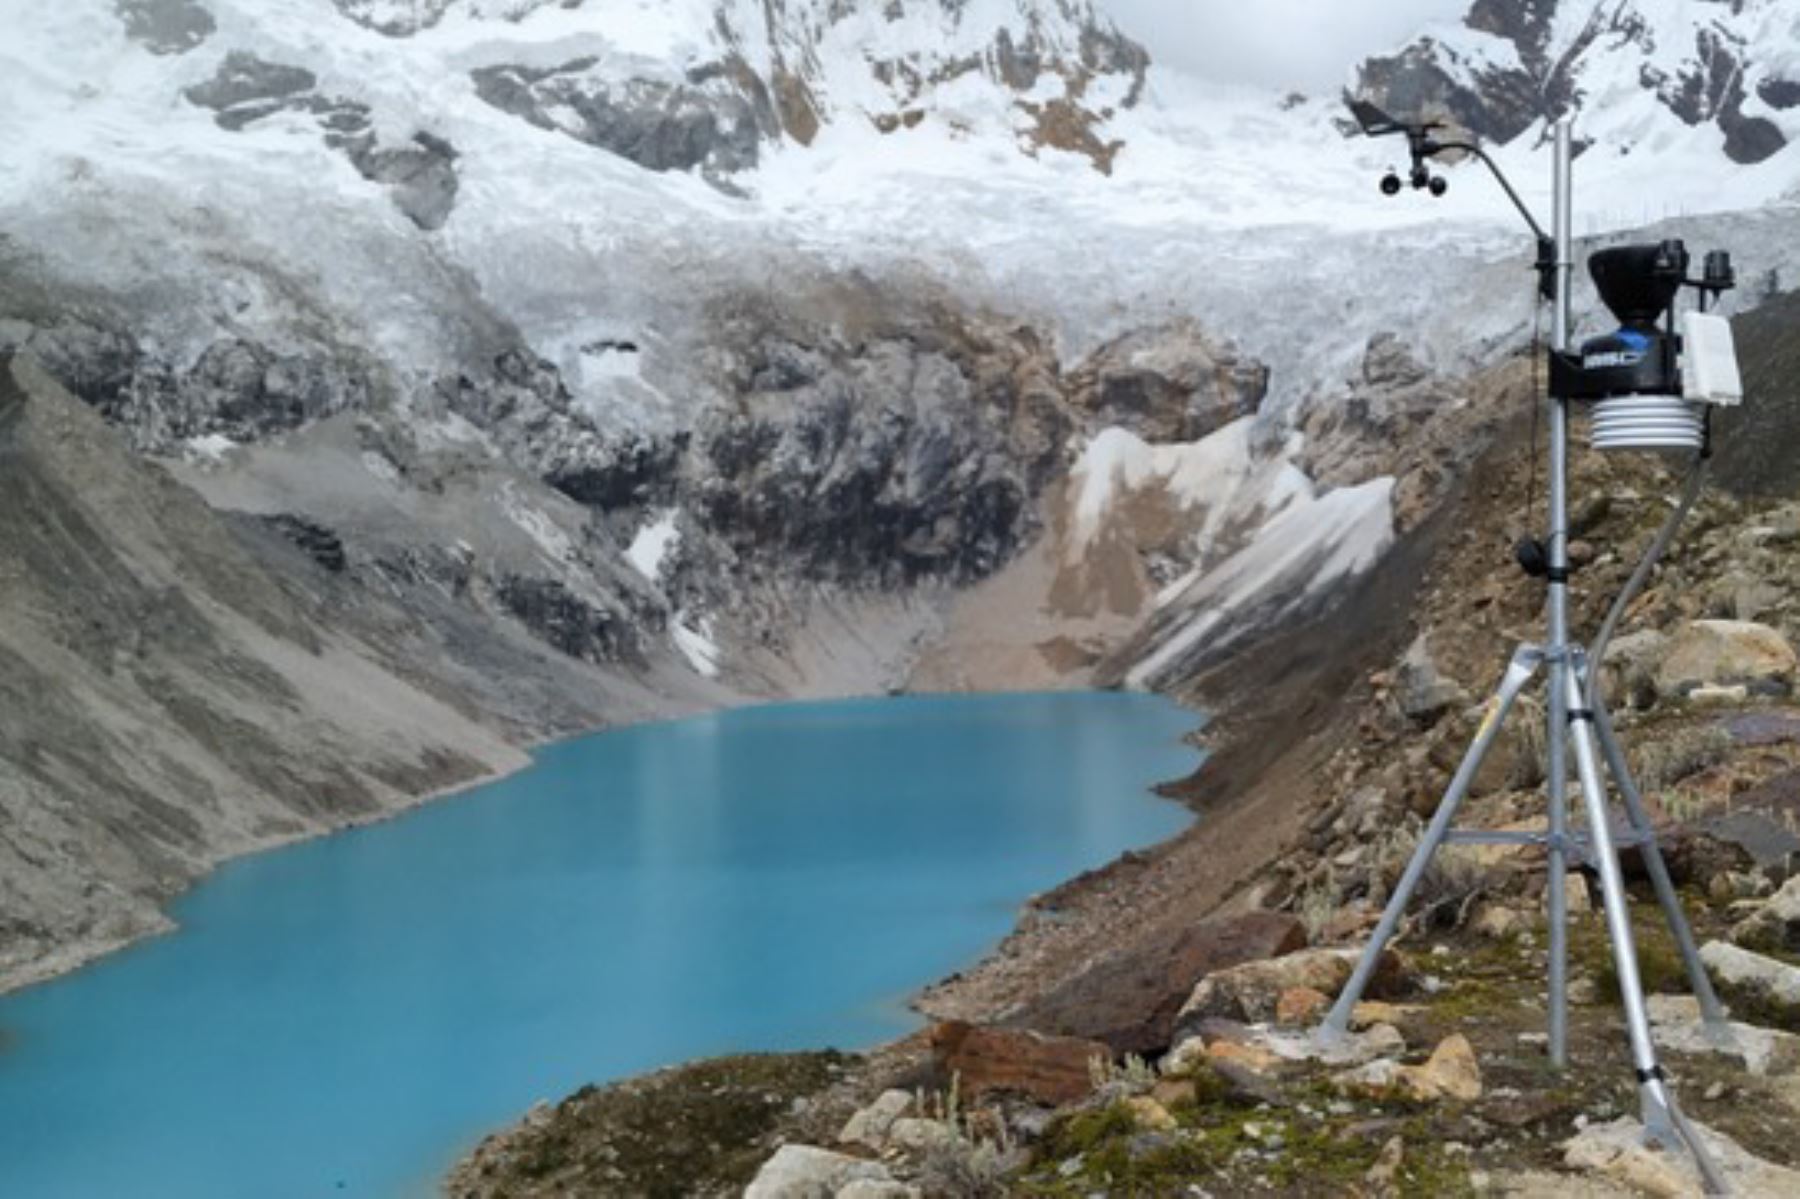 Perú reúne el 70 % de glaciares tropicales del mundo con 18 cordilleras glaciares, los cuales abarcan más de 1,000 kilómetros de superficie glaciar.